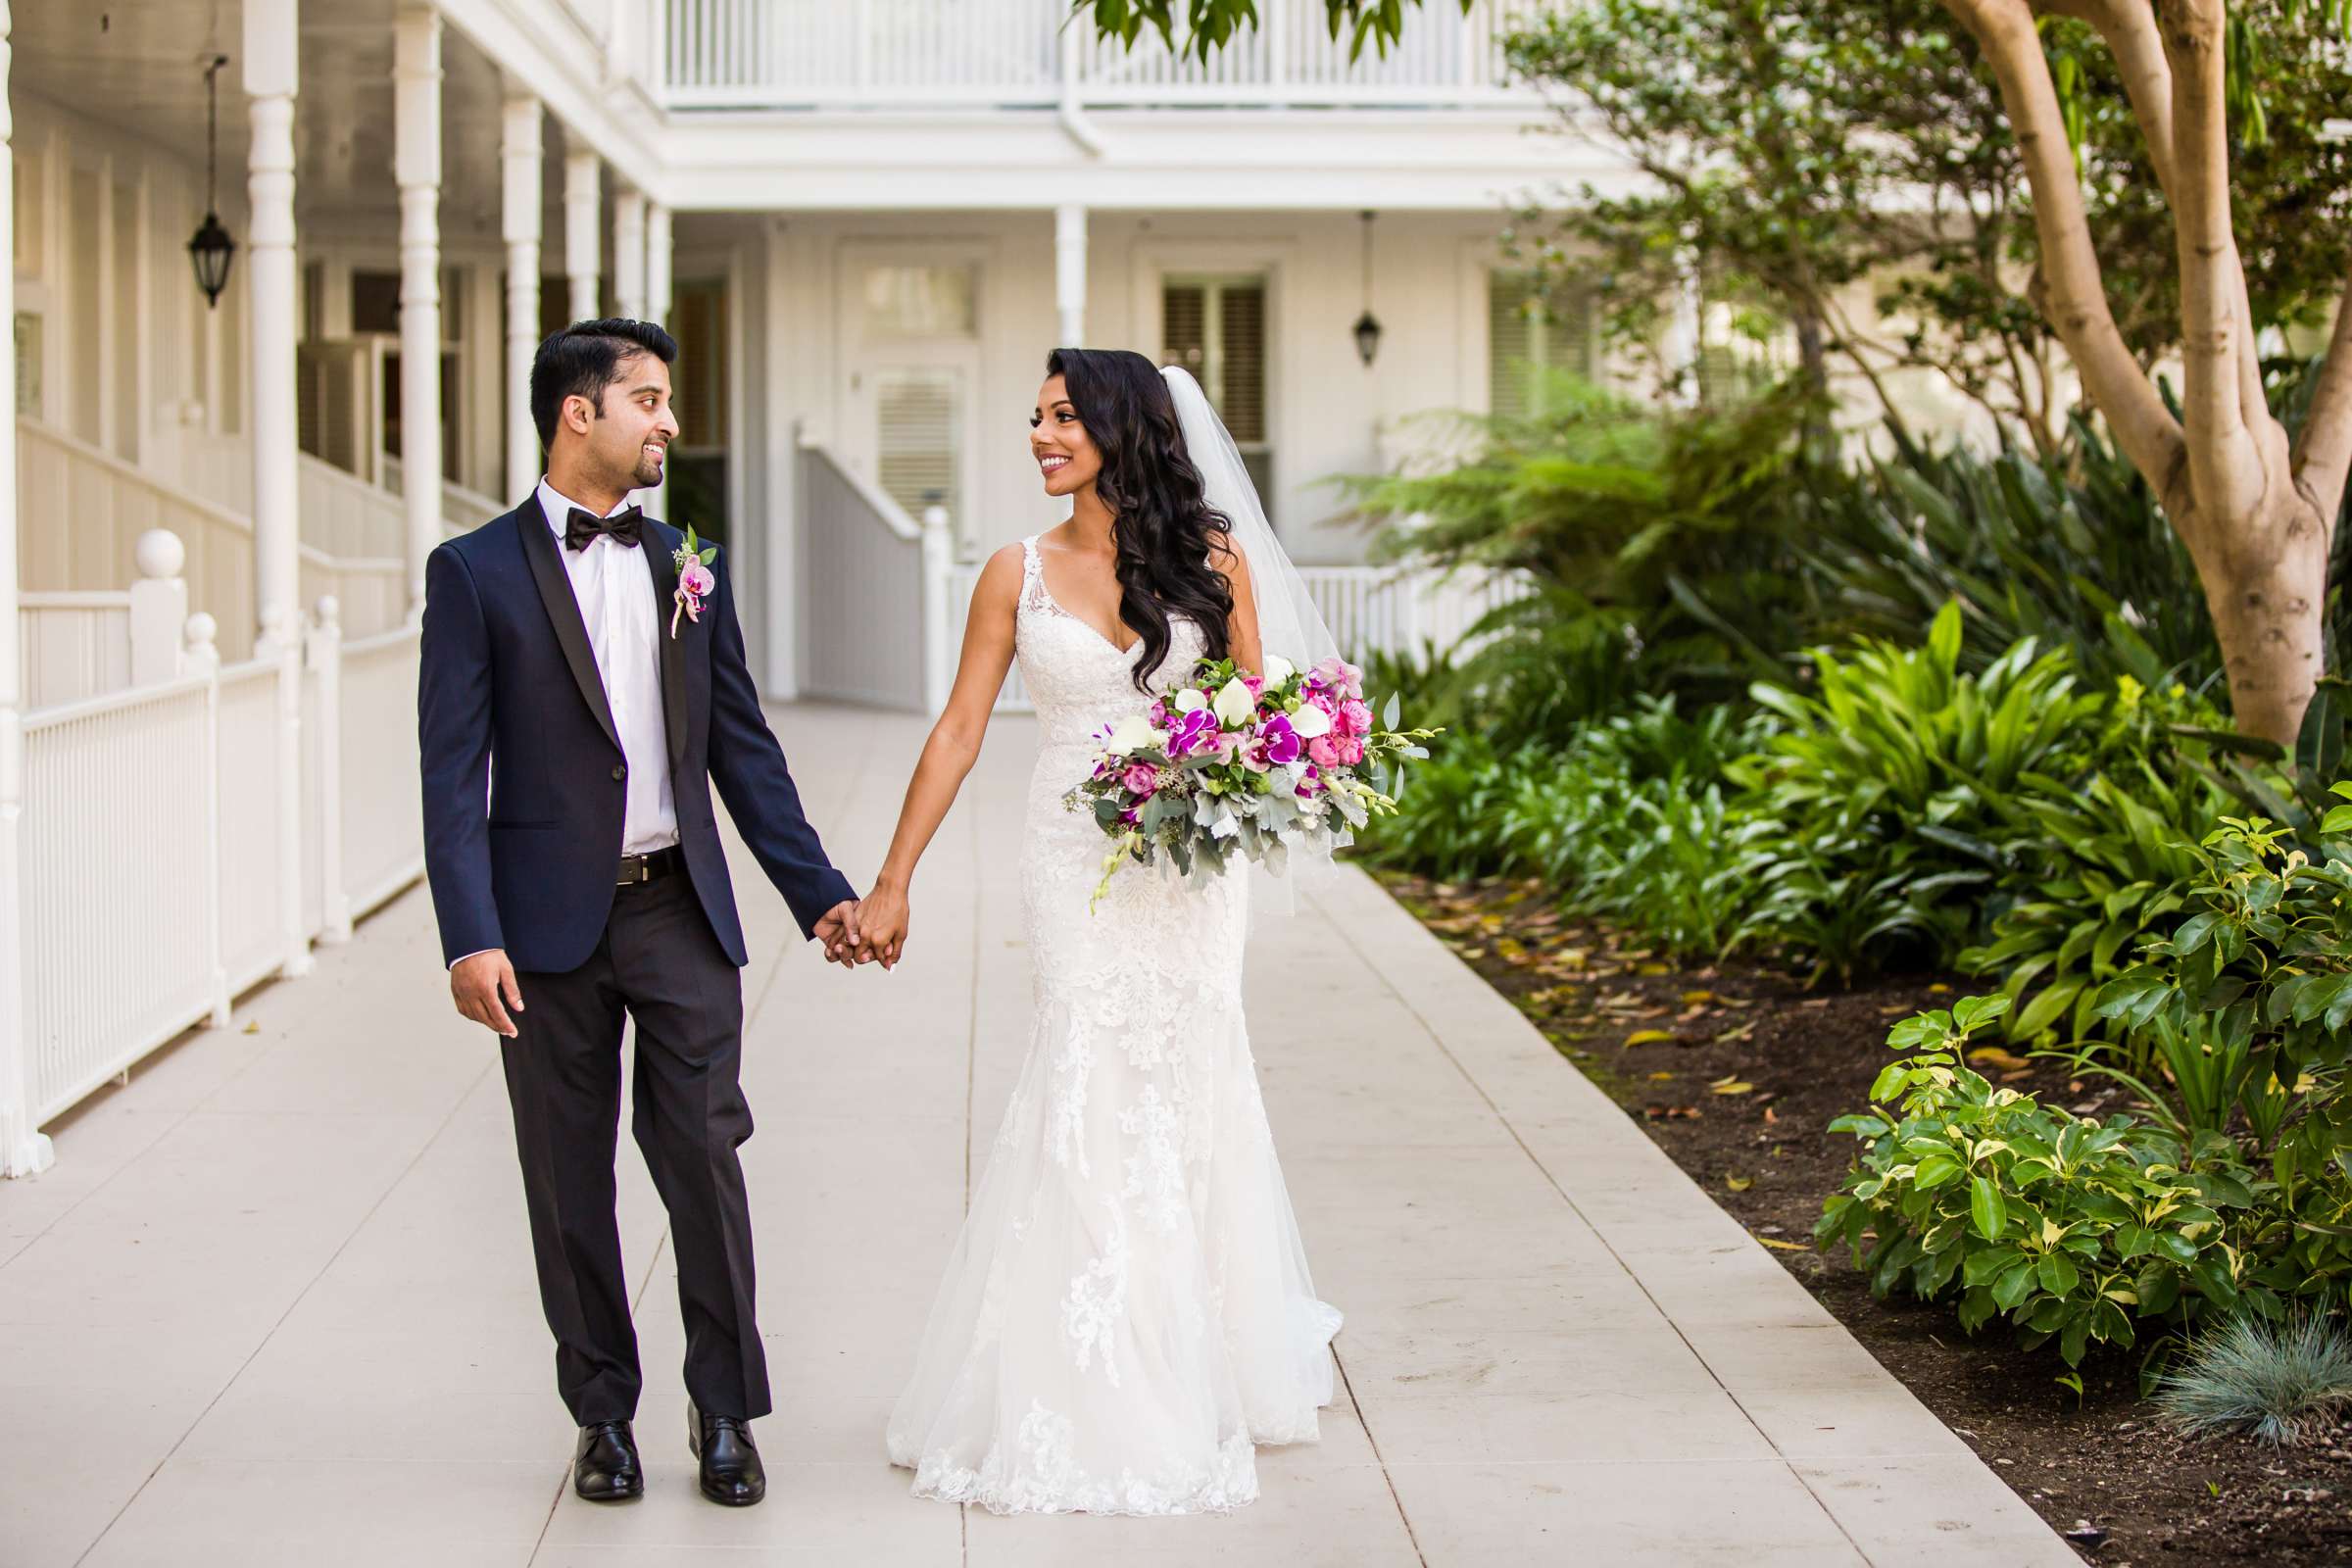 Hotel Del Coronado Wedding, Sabrina and Gehaan Wedding Photo #409101 by True Photography